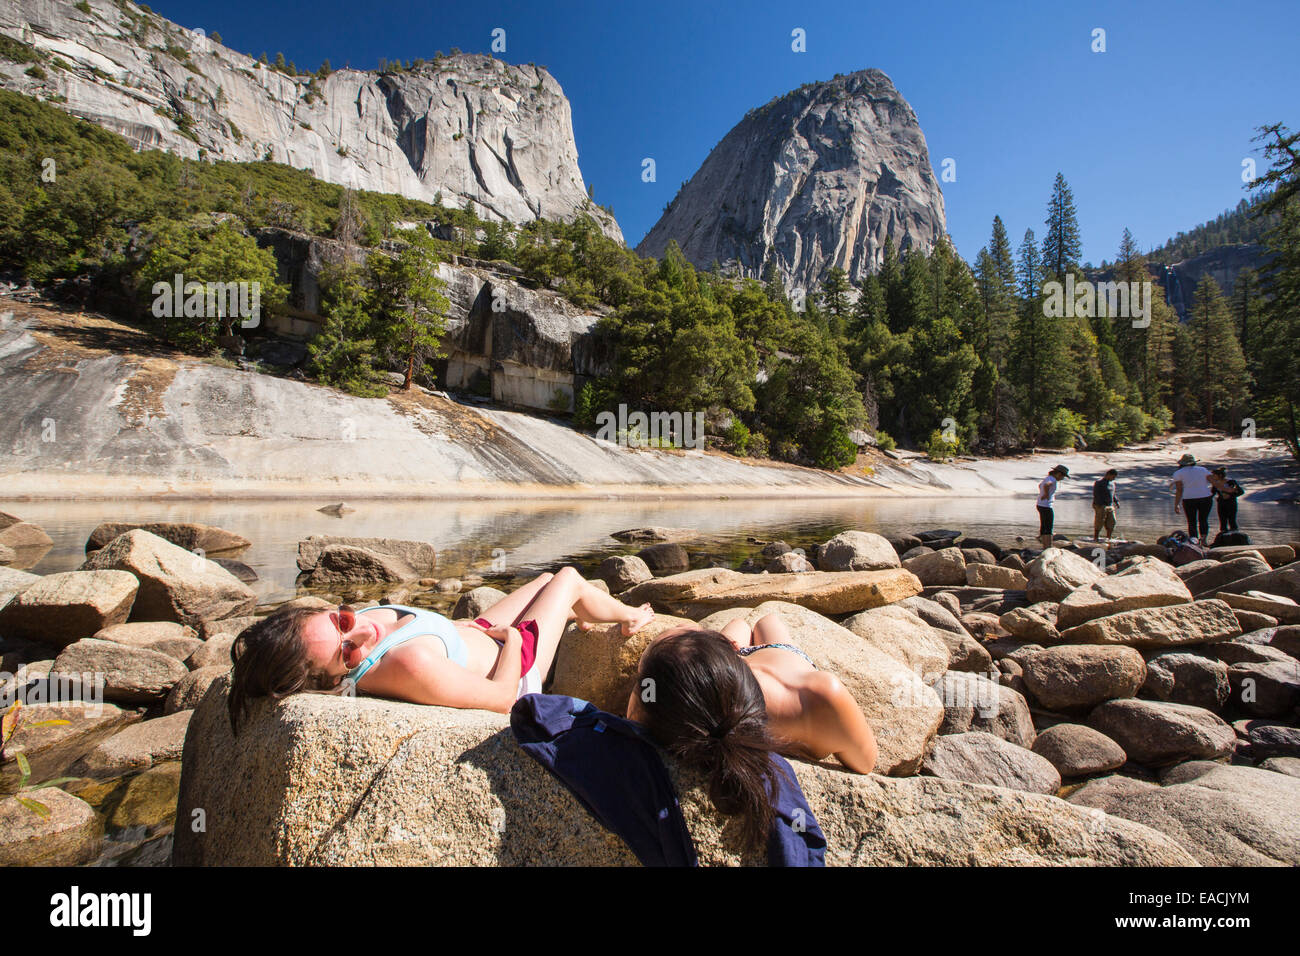 Le giovani donne a prendere il sole in una piscina al di sopra del Nevada Fall nella piccola valle di Yosemite, Yosemite National Park, California, Stati Uniti d'America. Foto Stock